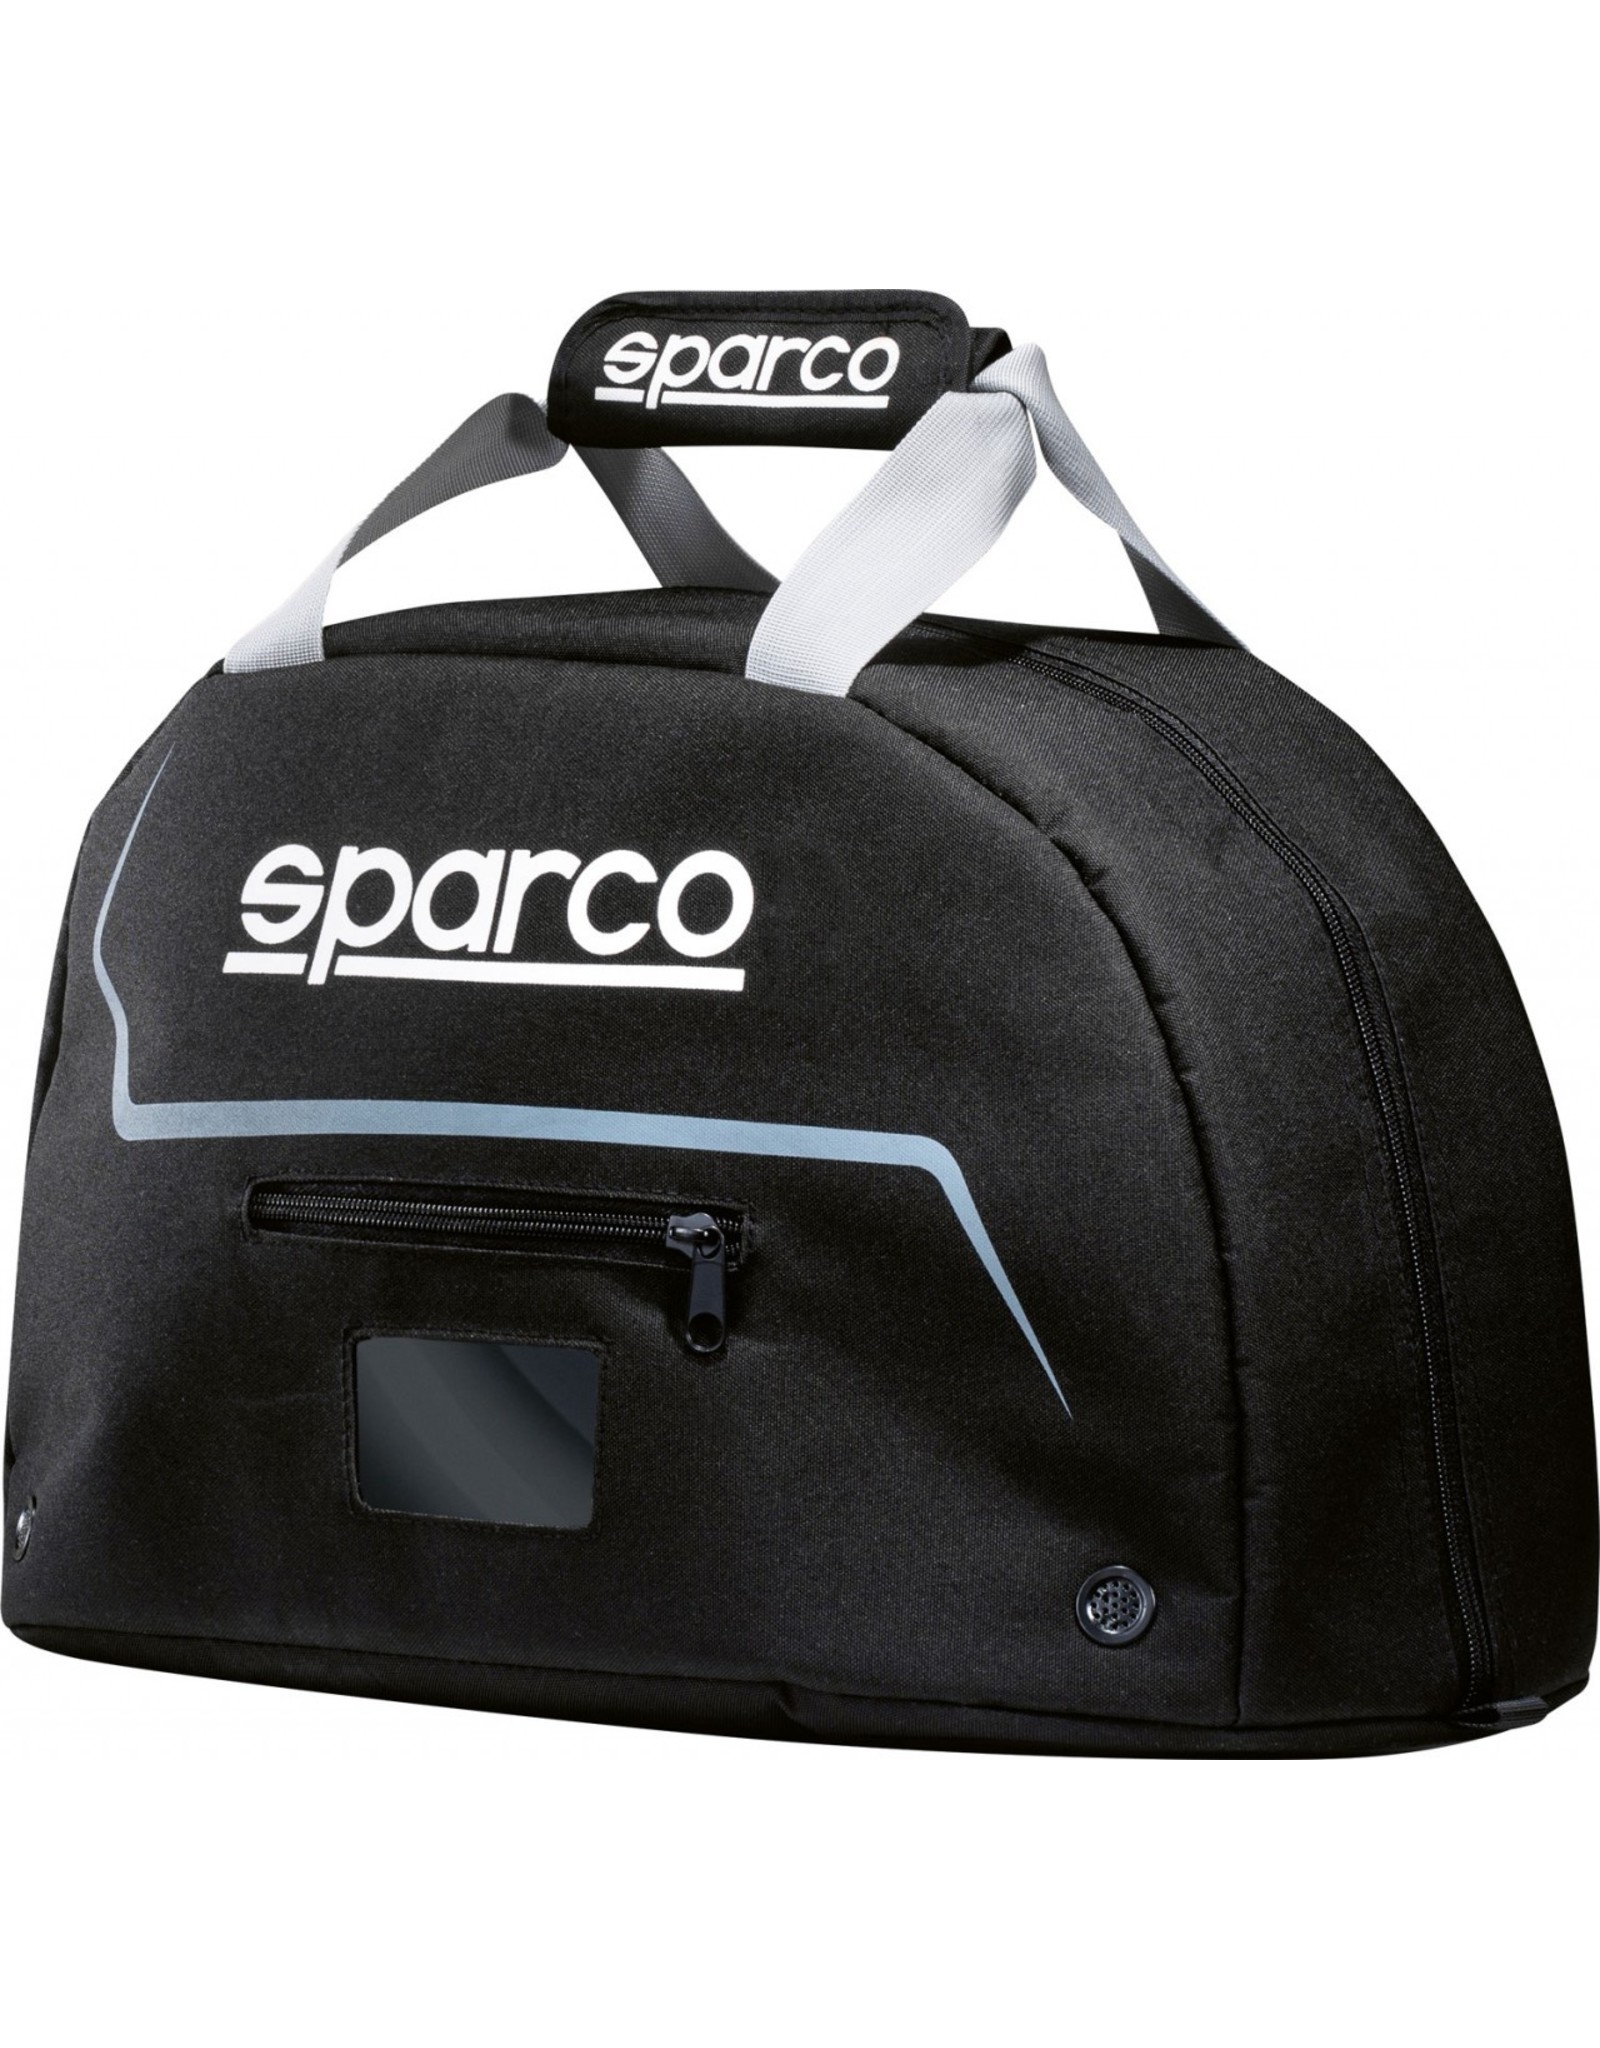 Sparco Sparco helmet bag